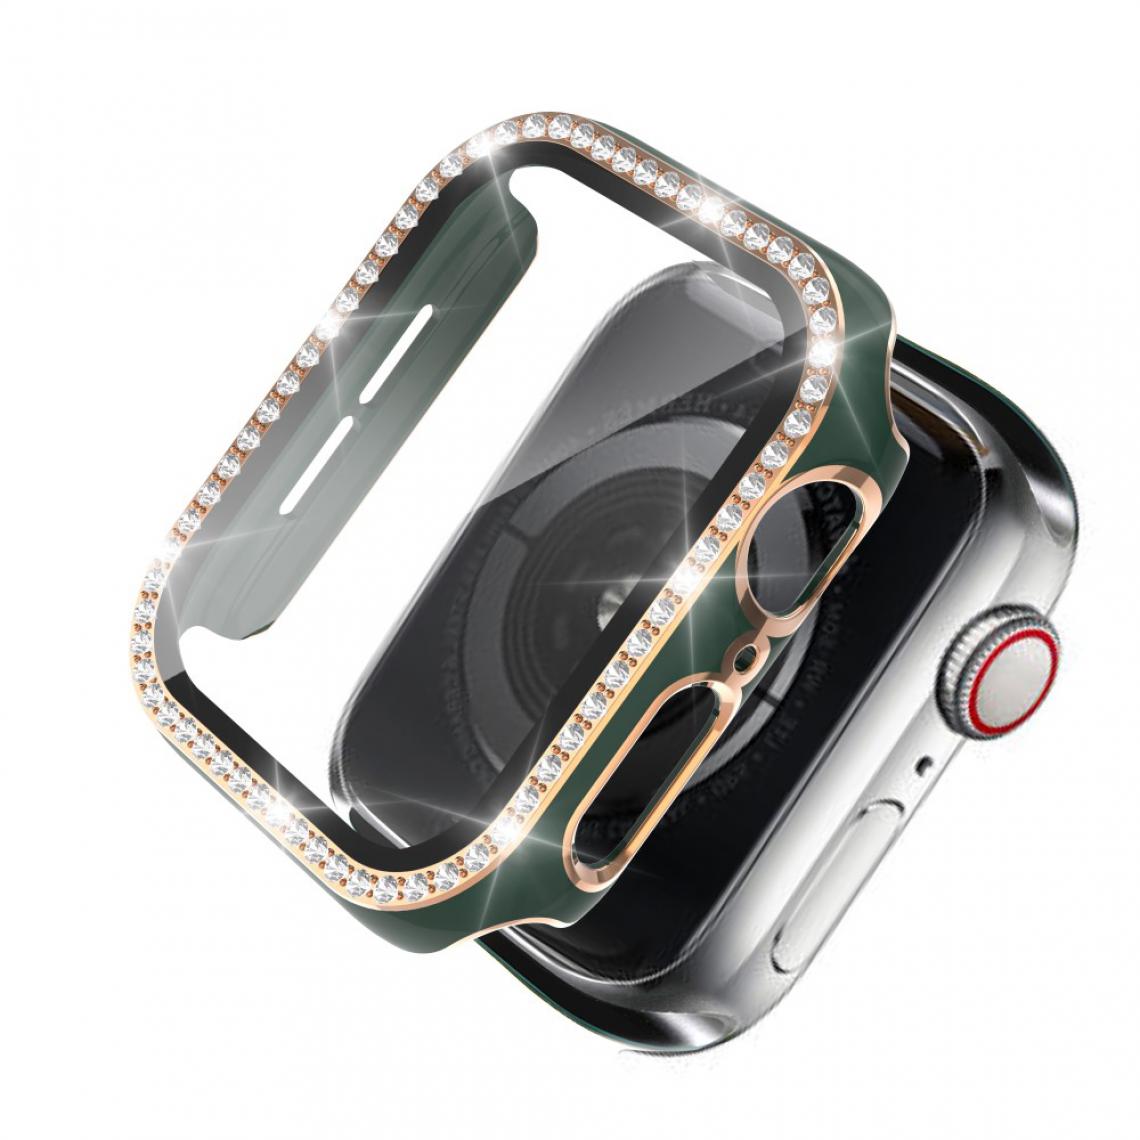 Other - Coque en TPU Cristal de galvanoplastie bicolore Vert/Or pour votre Apple Watch 1/2/3 38mm - Accessoires bracelet connecté